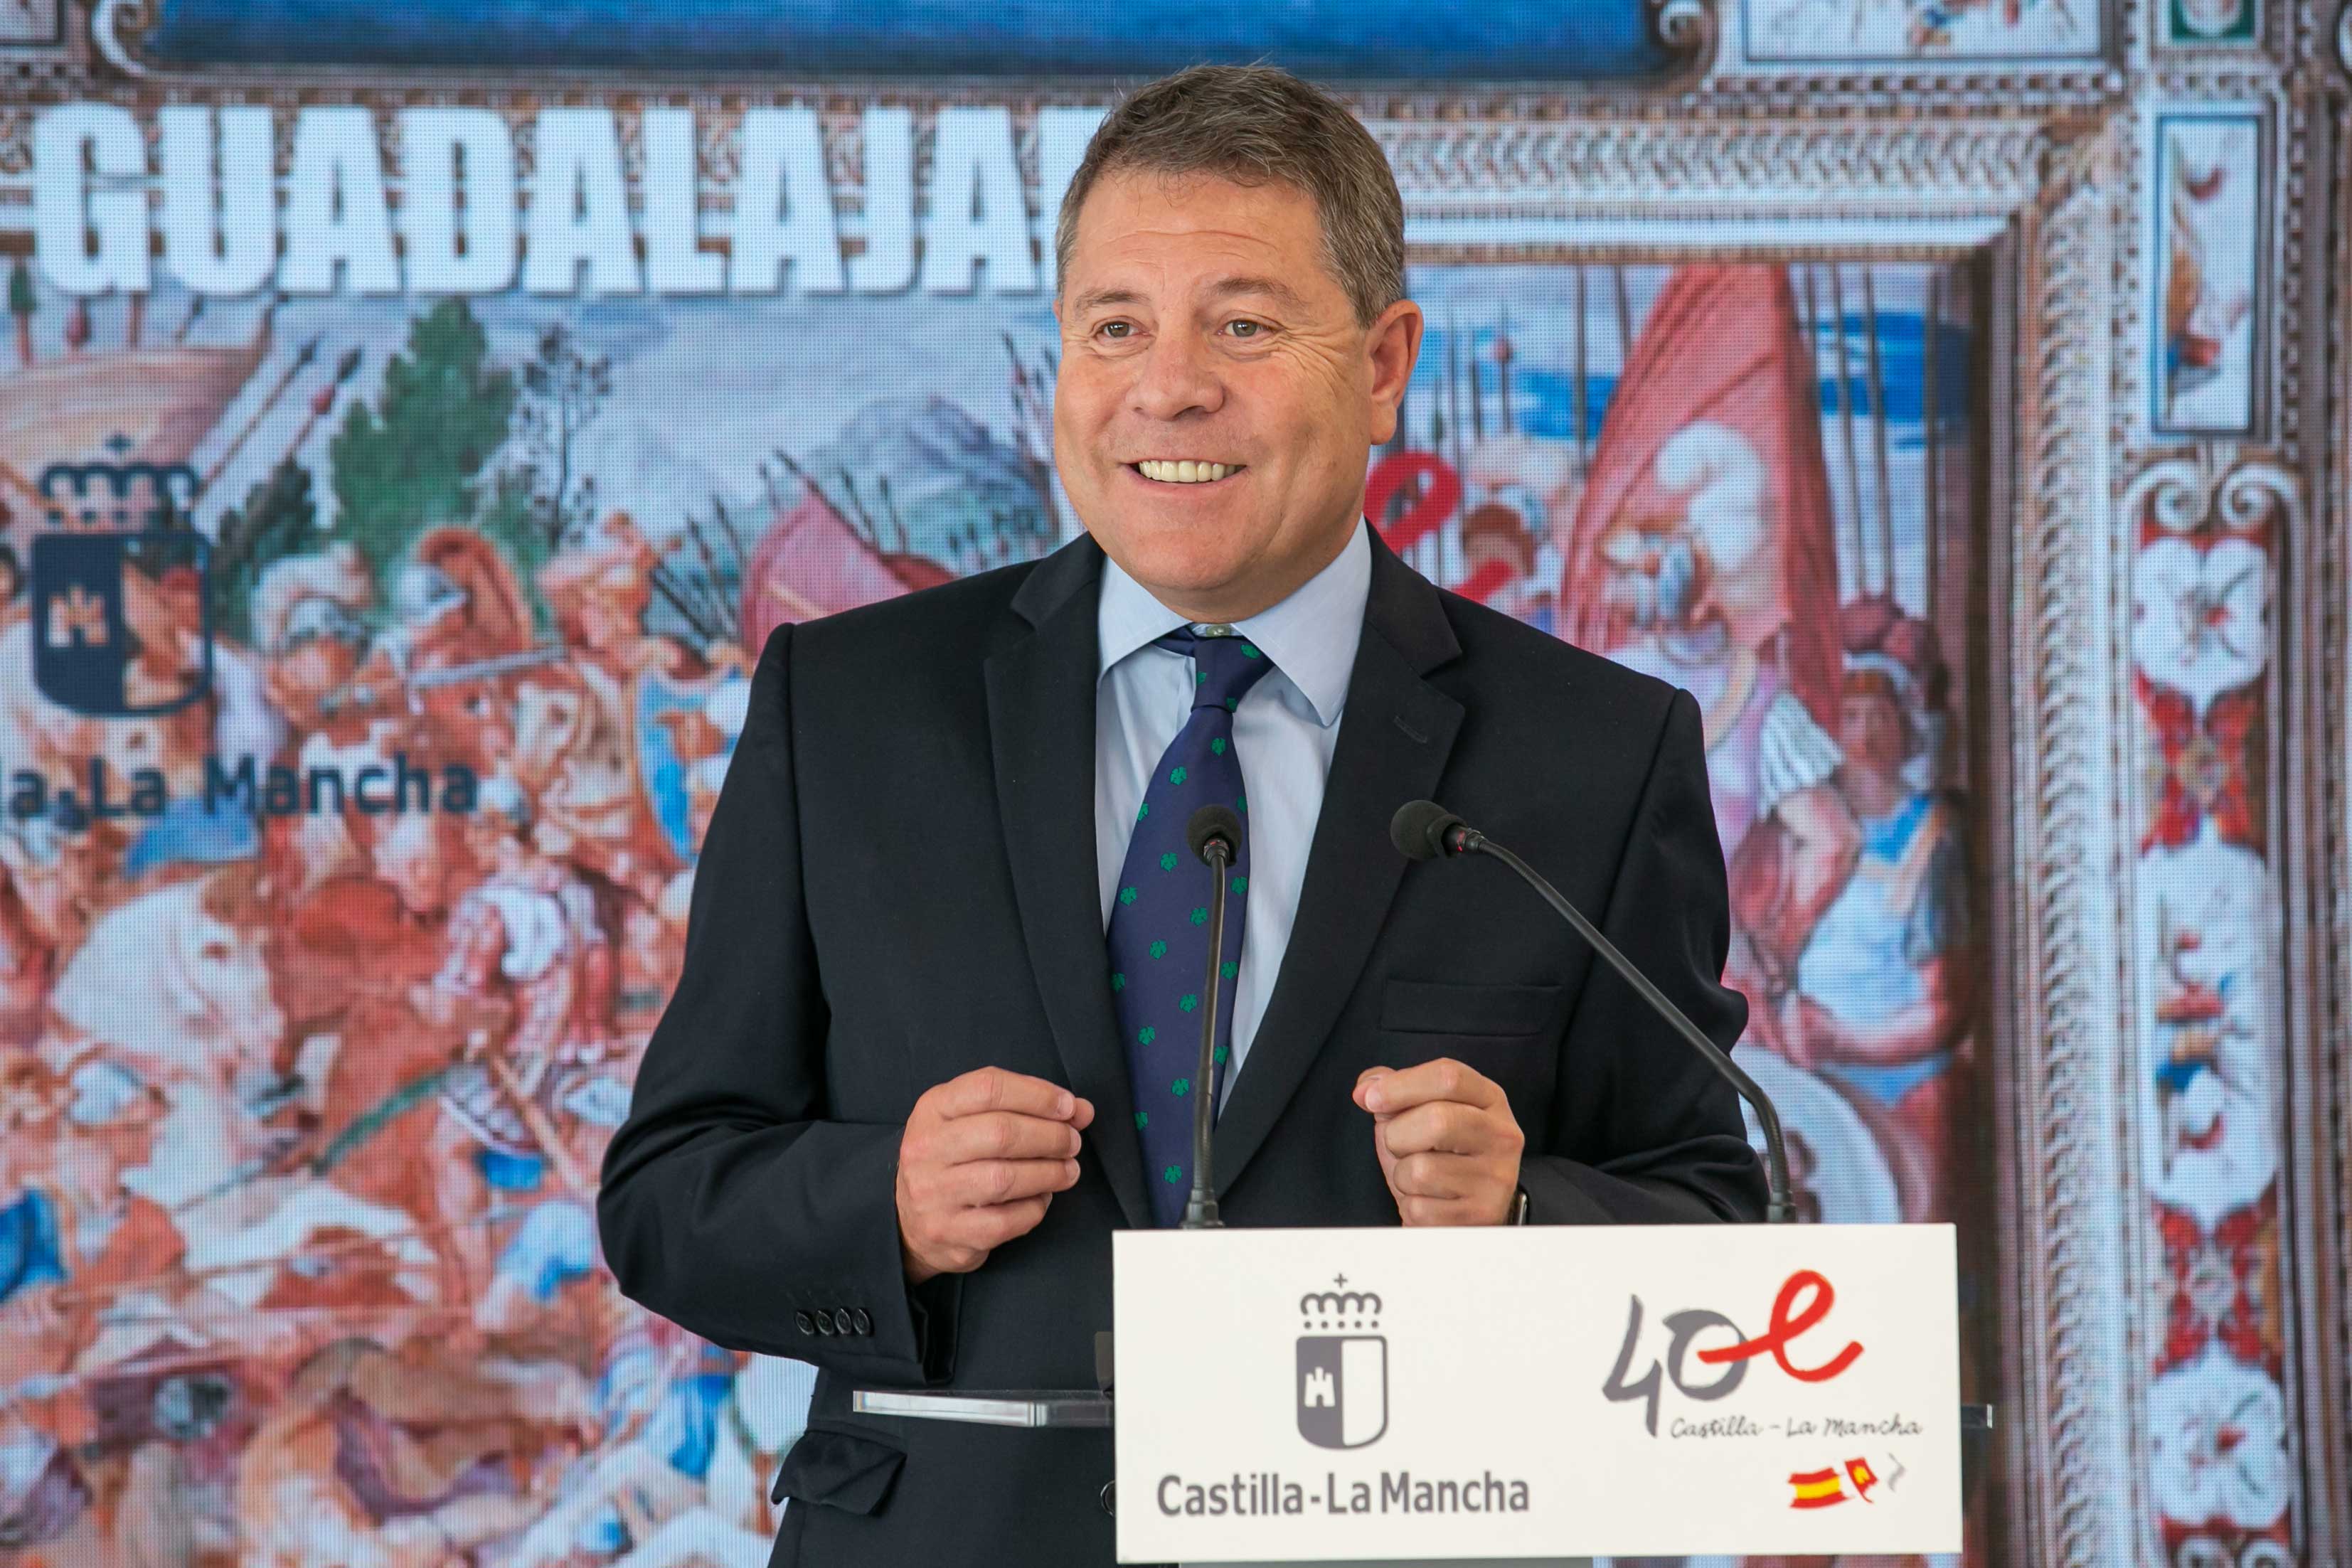 El presidente de Castilla-La Mancha, Emiliano García-Page, ha inaugurado la ampliación del IES ‘José Luis Sampedro’ de Guadalajara